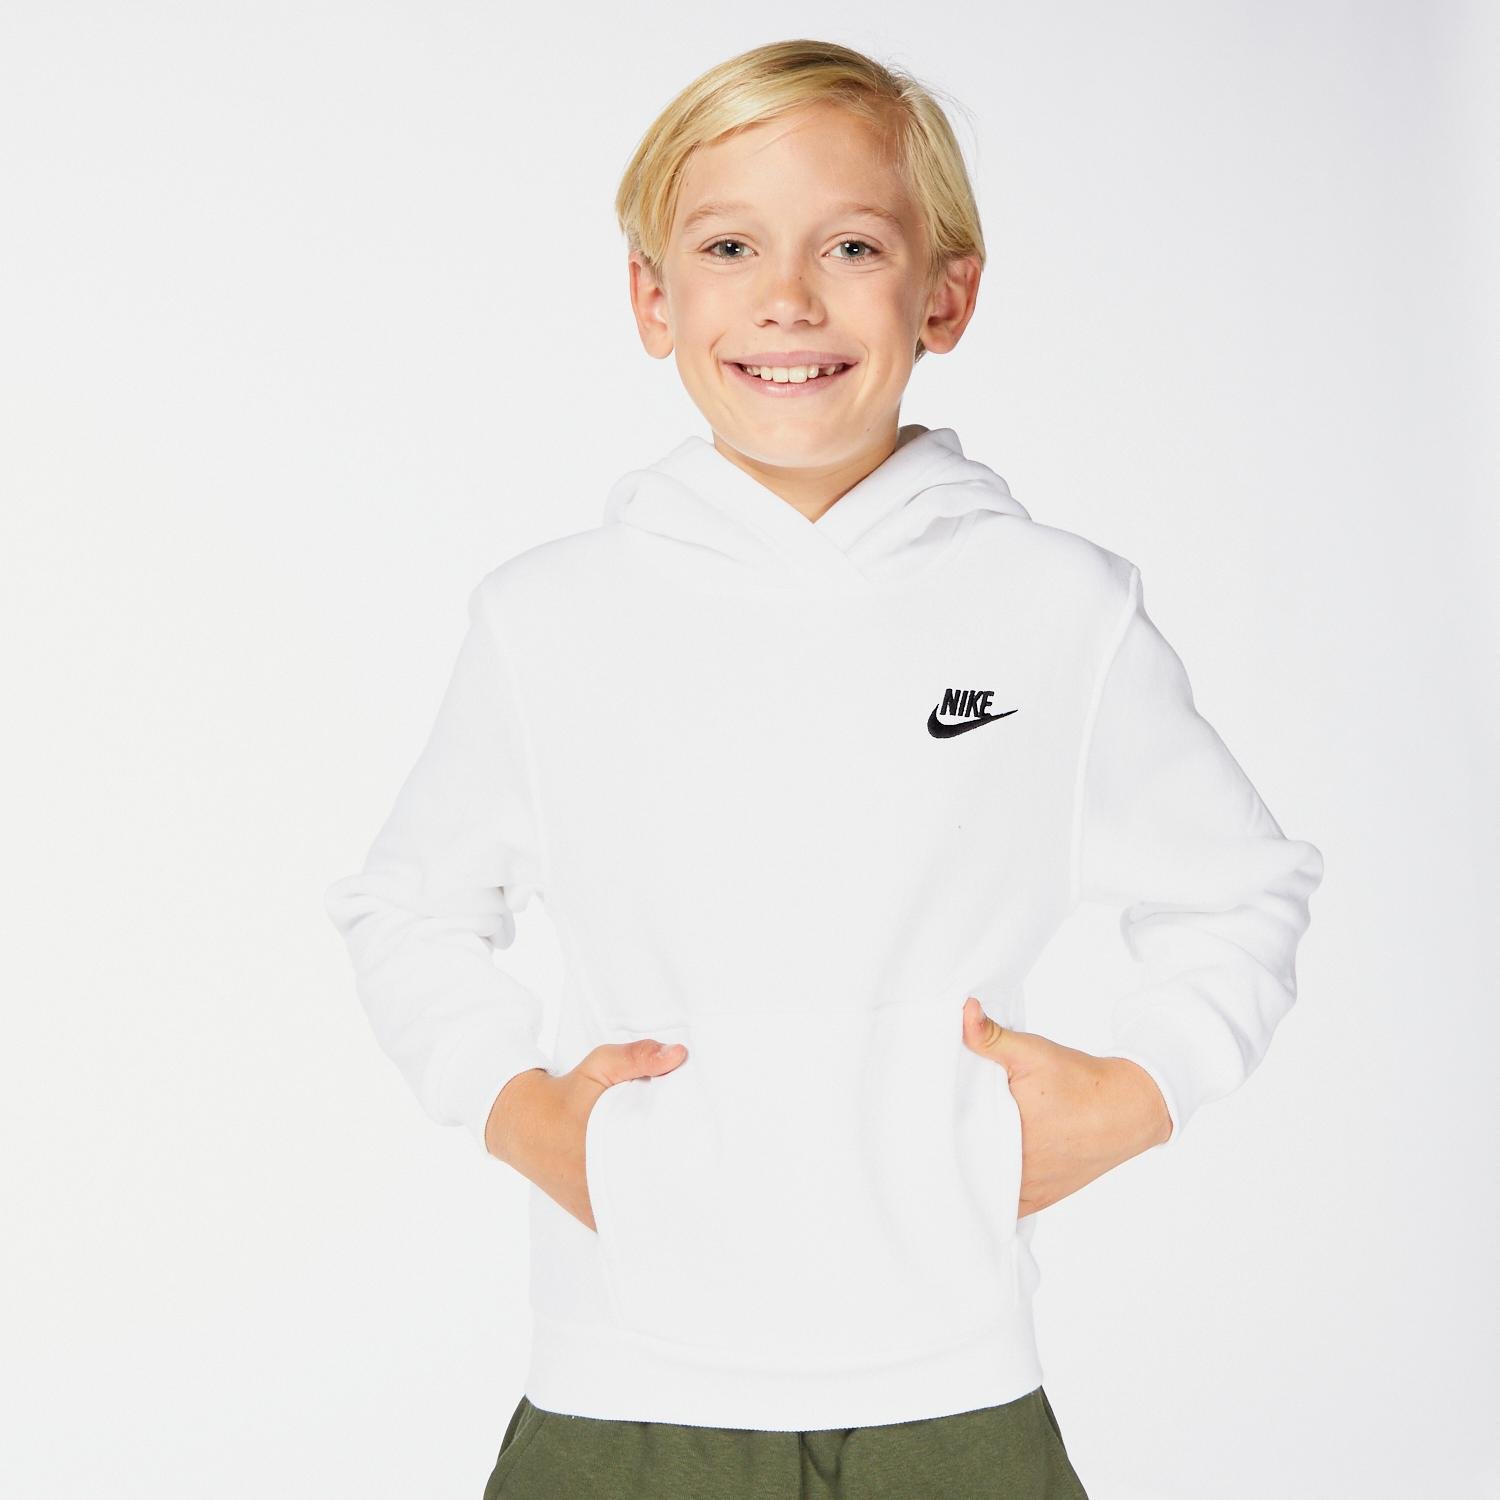 Sudaderas negras con y sin capucha para niños/as. Nike ES